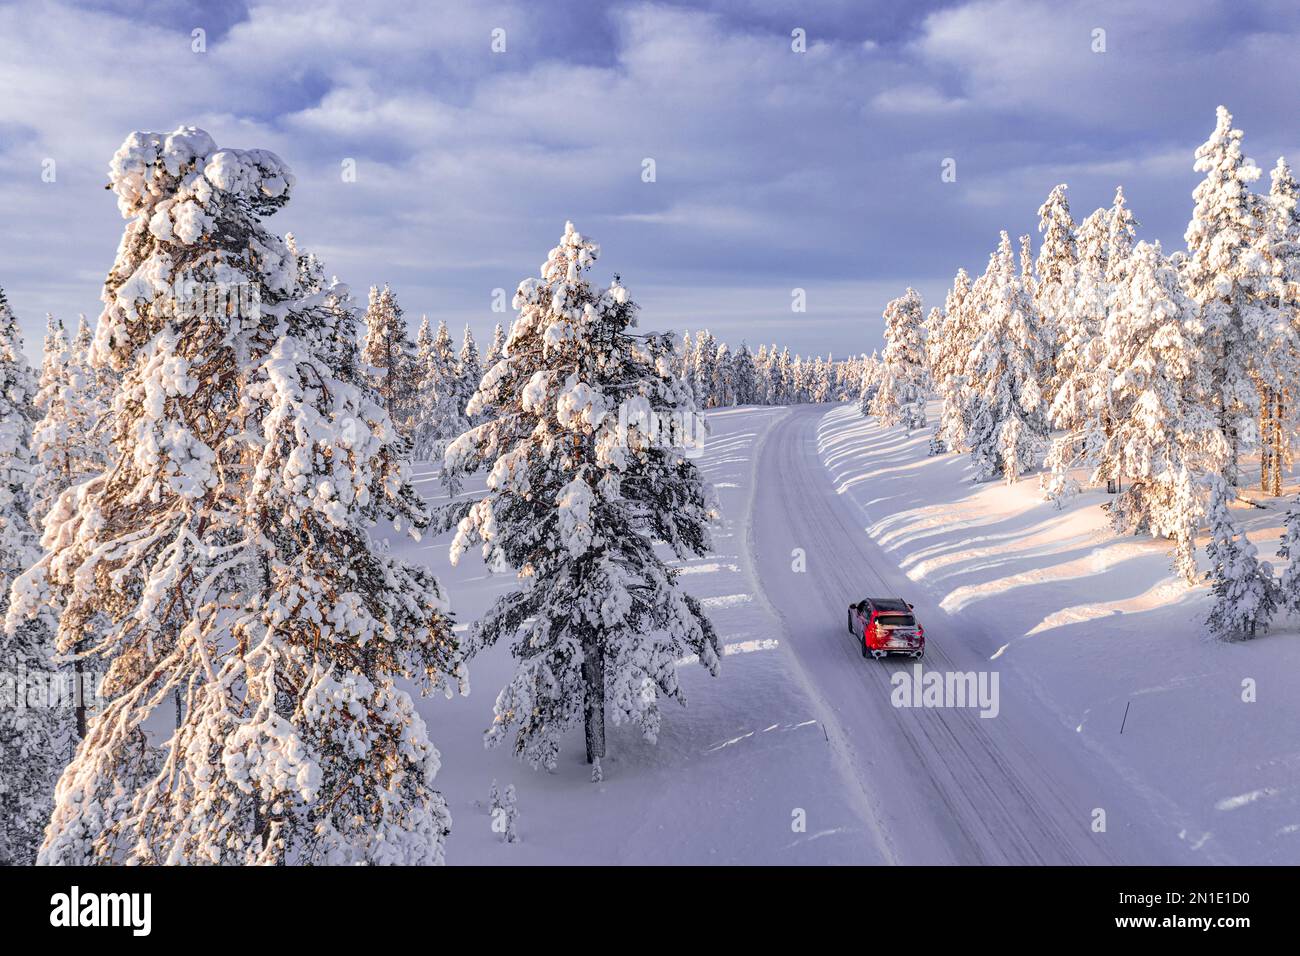 Vue en grand angle d'un véhicule tout-terrain roulant sur une piste glacée parmi les arbres couverts de neige, Kangos, Laponie, Suède, Scandinavie, Europe Banque D'Images